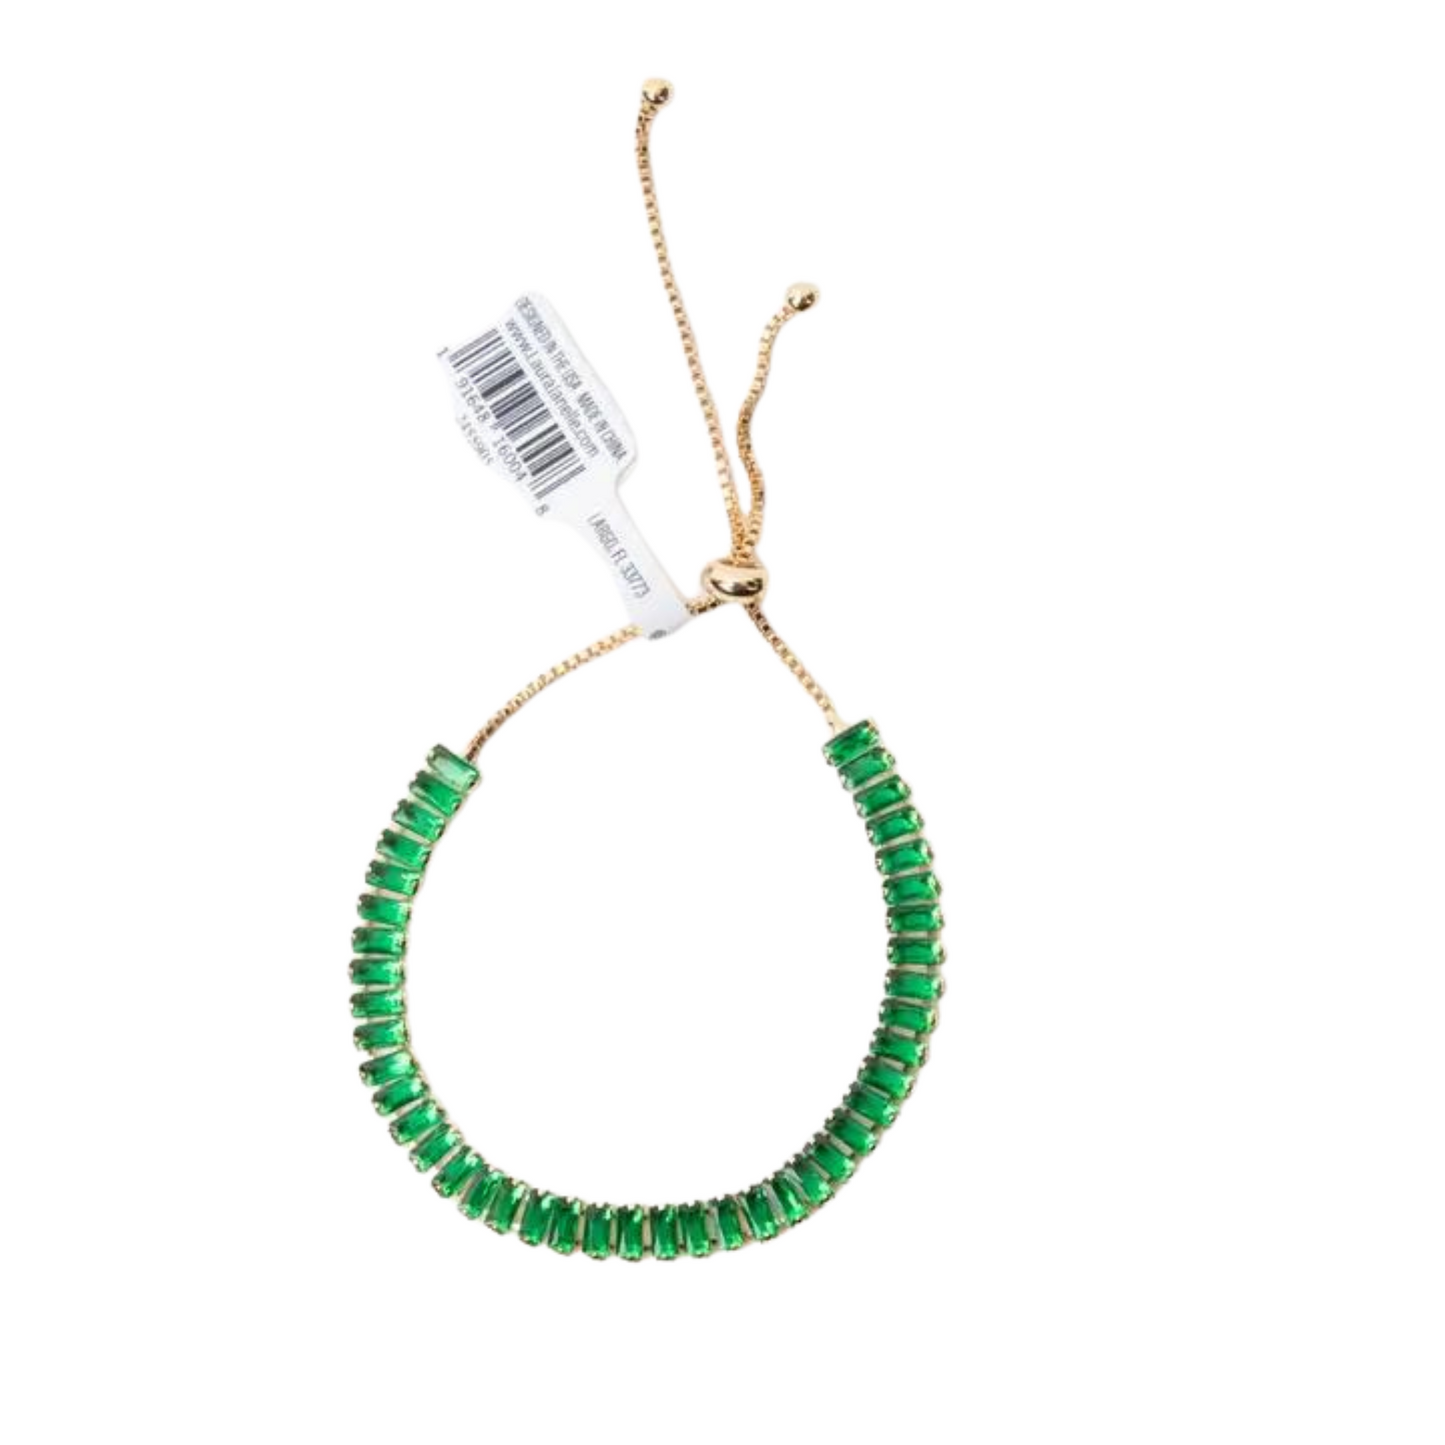 14K gold plated adjustable tennis bracelet in emerald